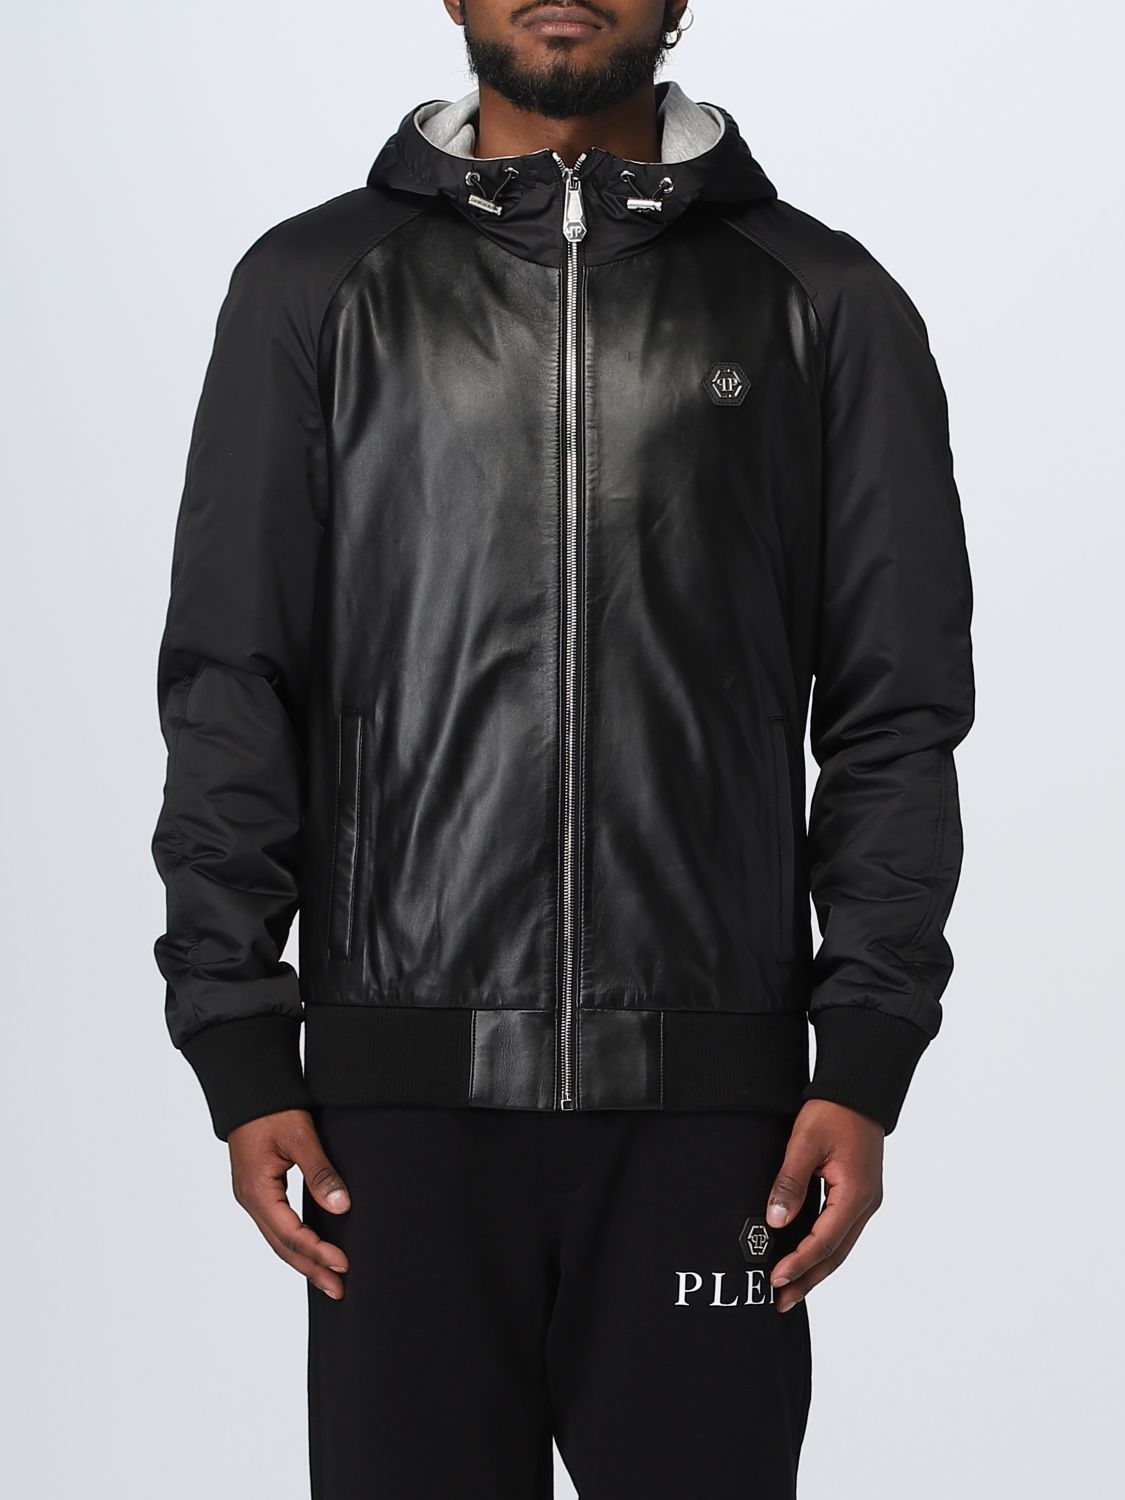 dilemma Geheugen kortademigheid PHILIPP PLEIN: jacket for man - Black | Philipp Plein jacket  SACCMLB1696PXV019N online on GIGLIO.COM